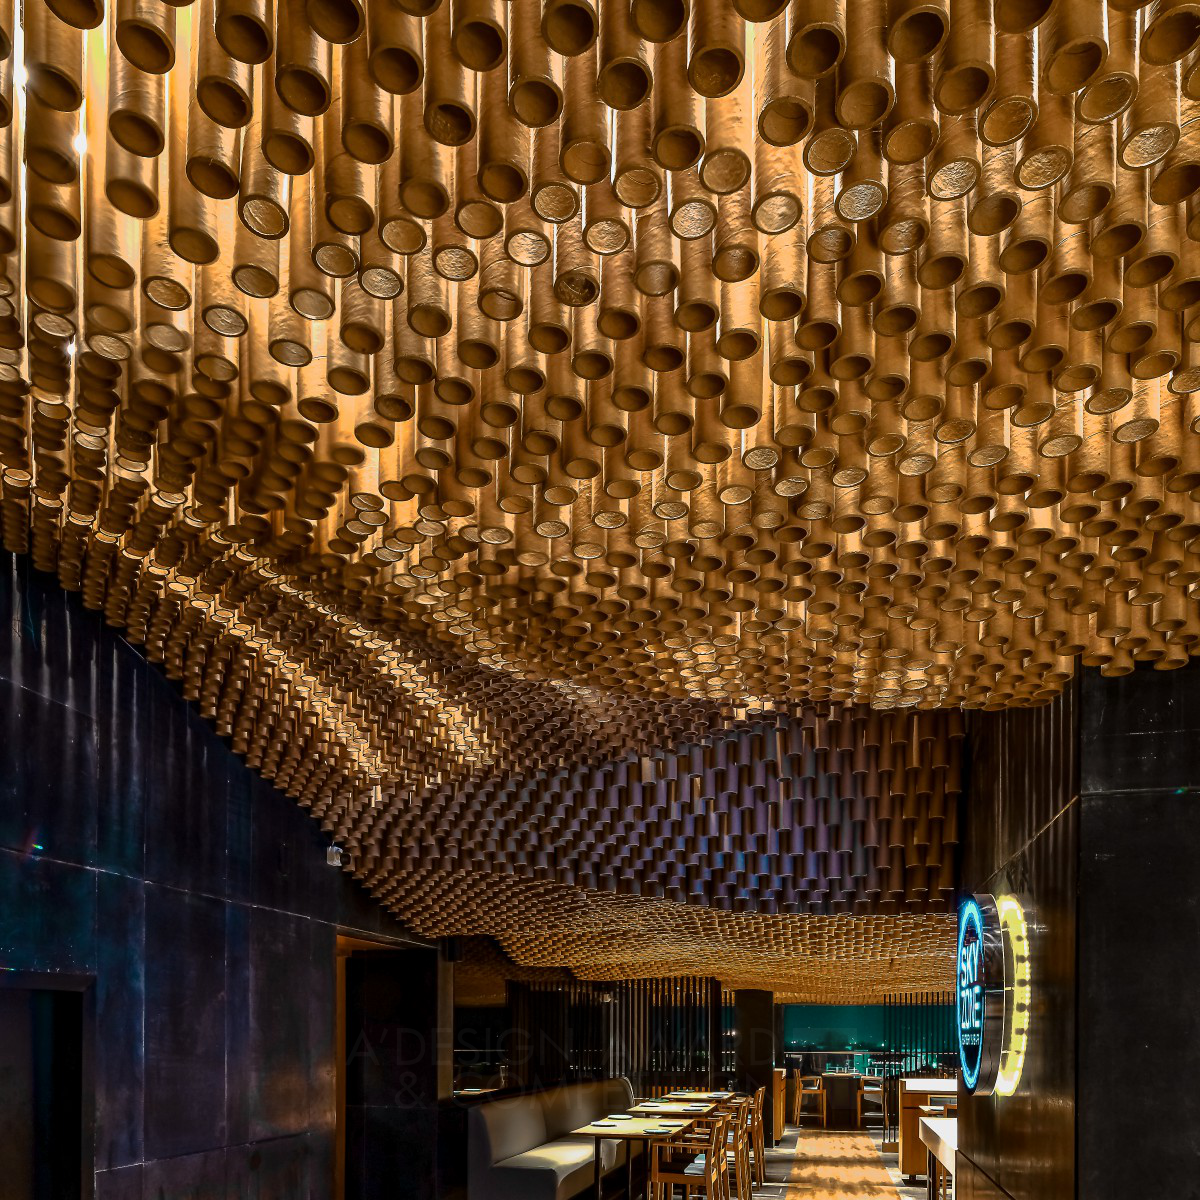 Sky Lounge Restaurant and Bar by Ketan Jawdekar